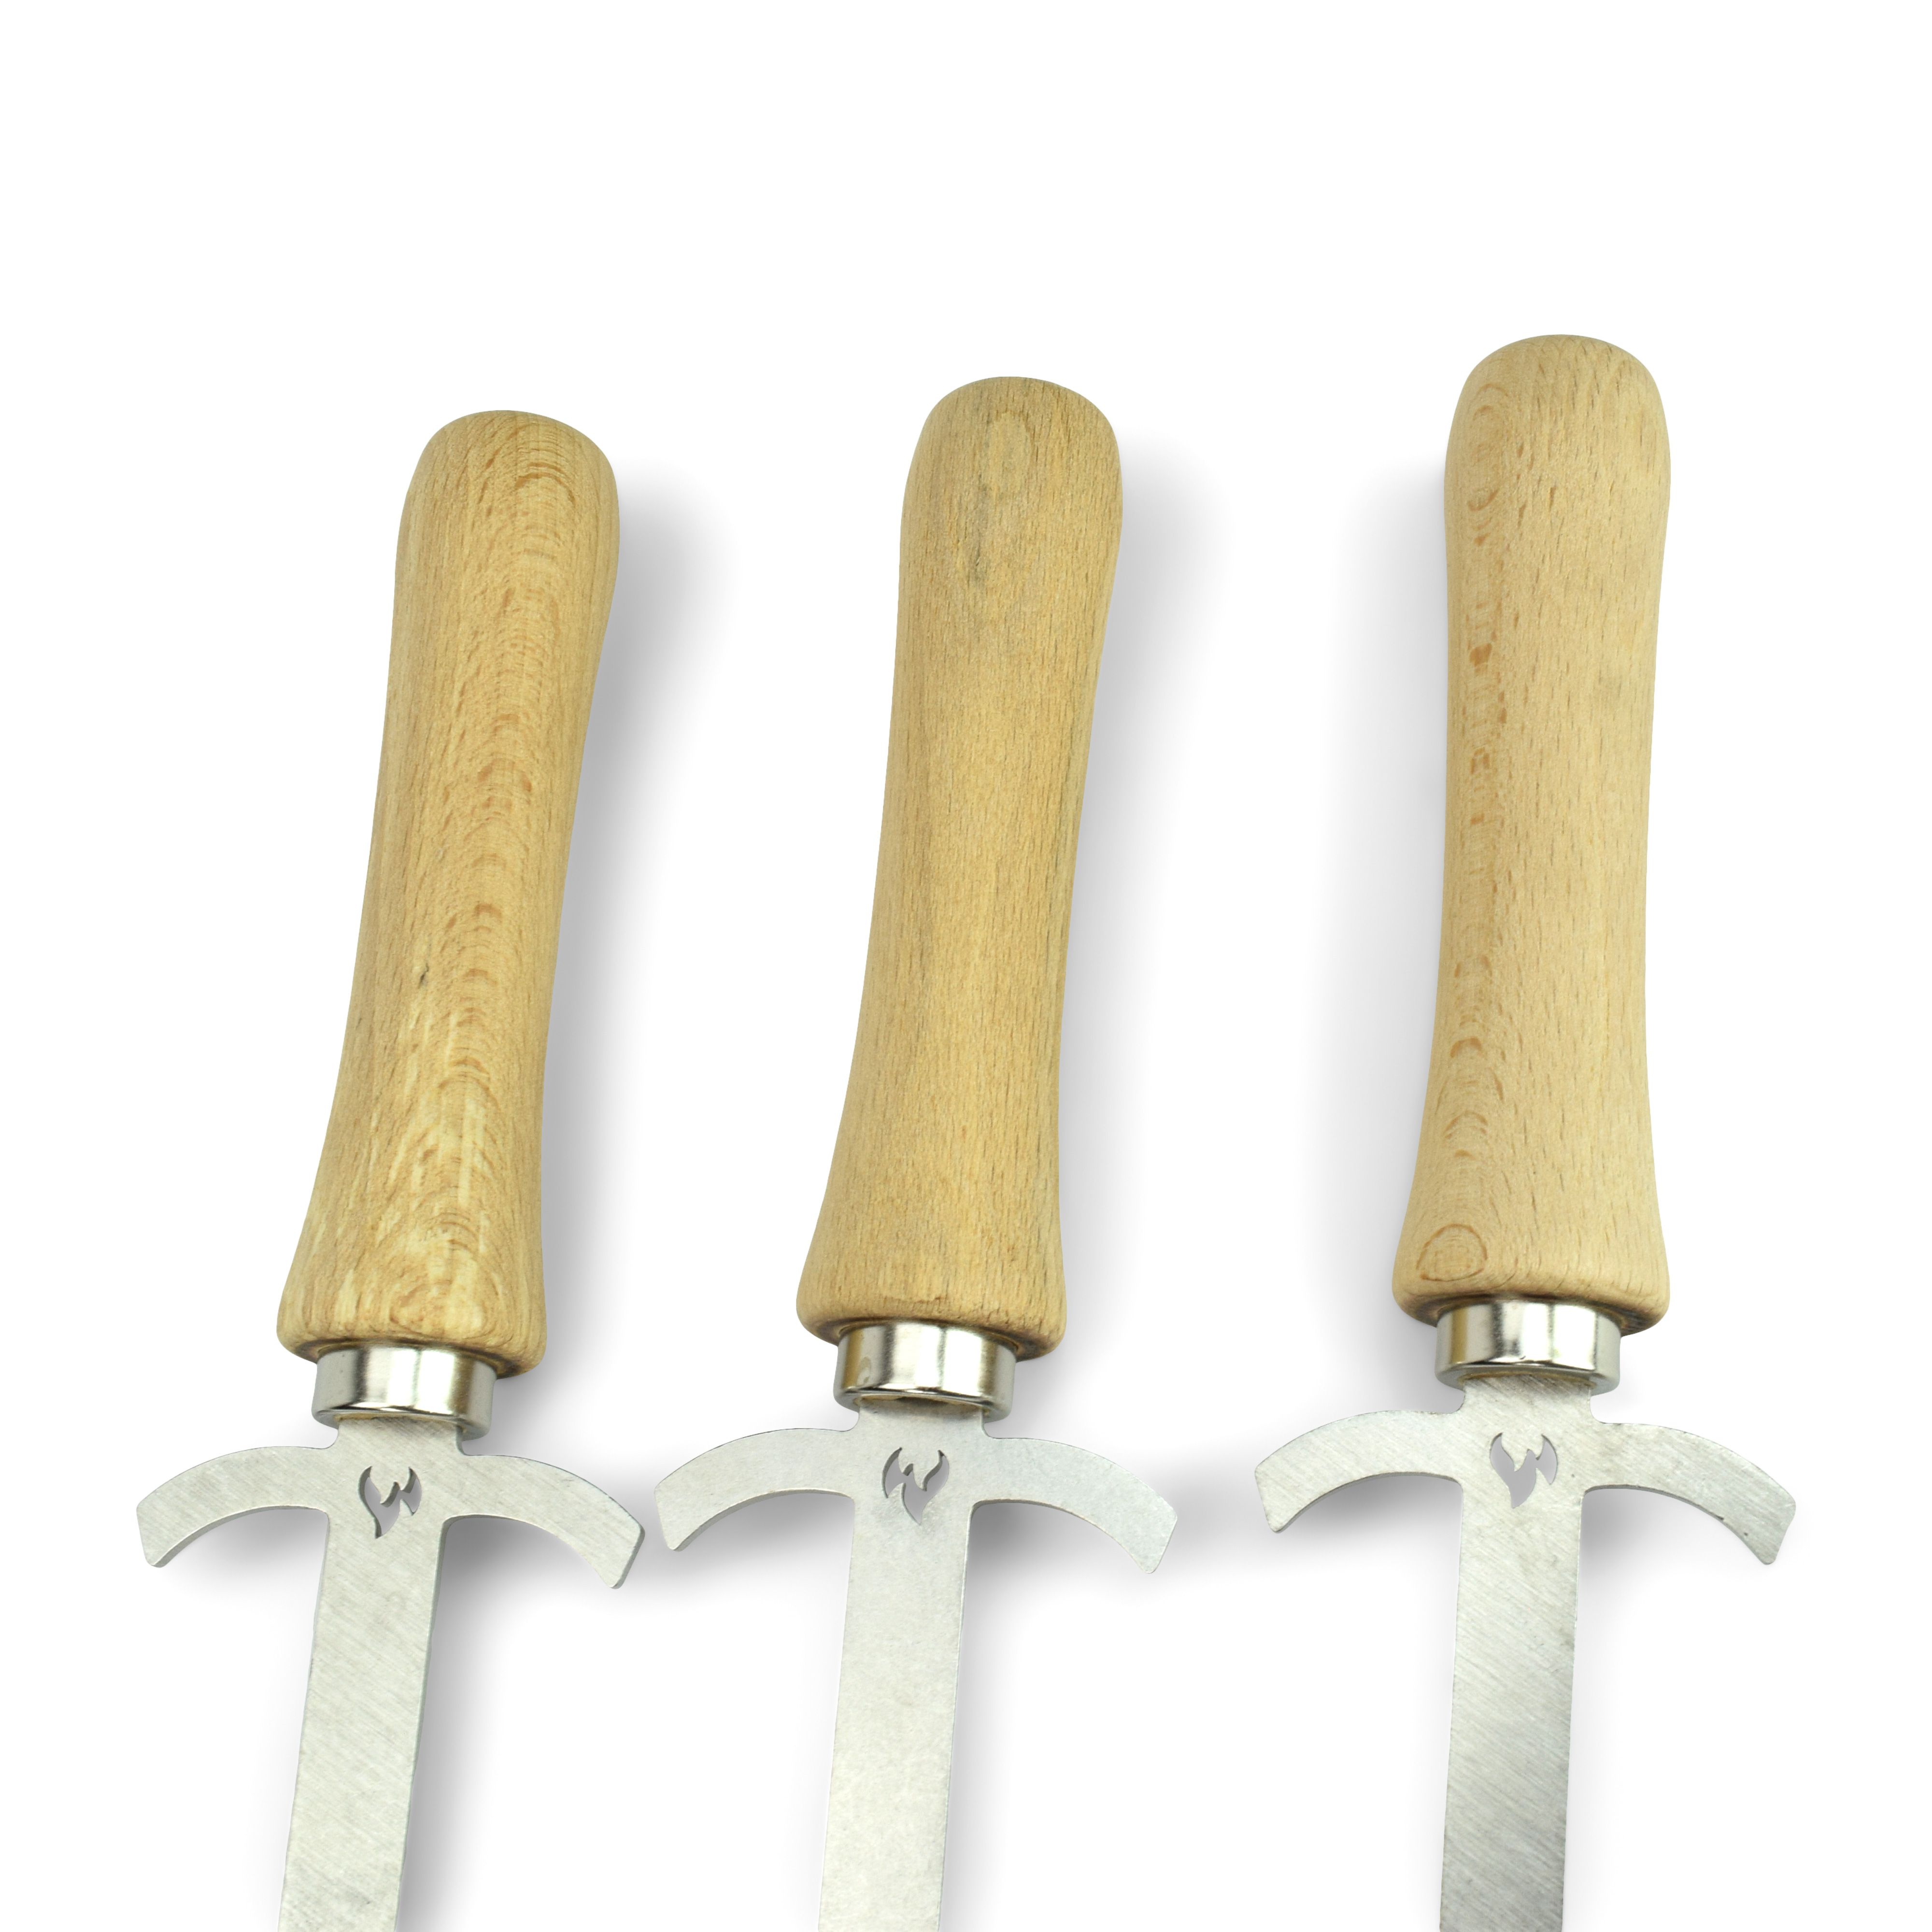 3 Grillschwerter aus Edelstahl der etwas andere Grillspieß - 44 cm lang